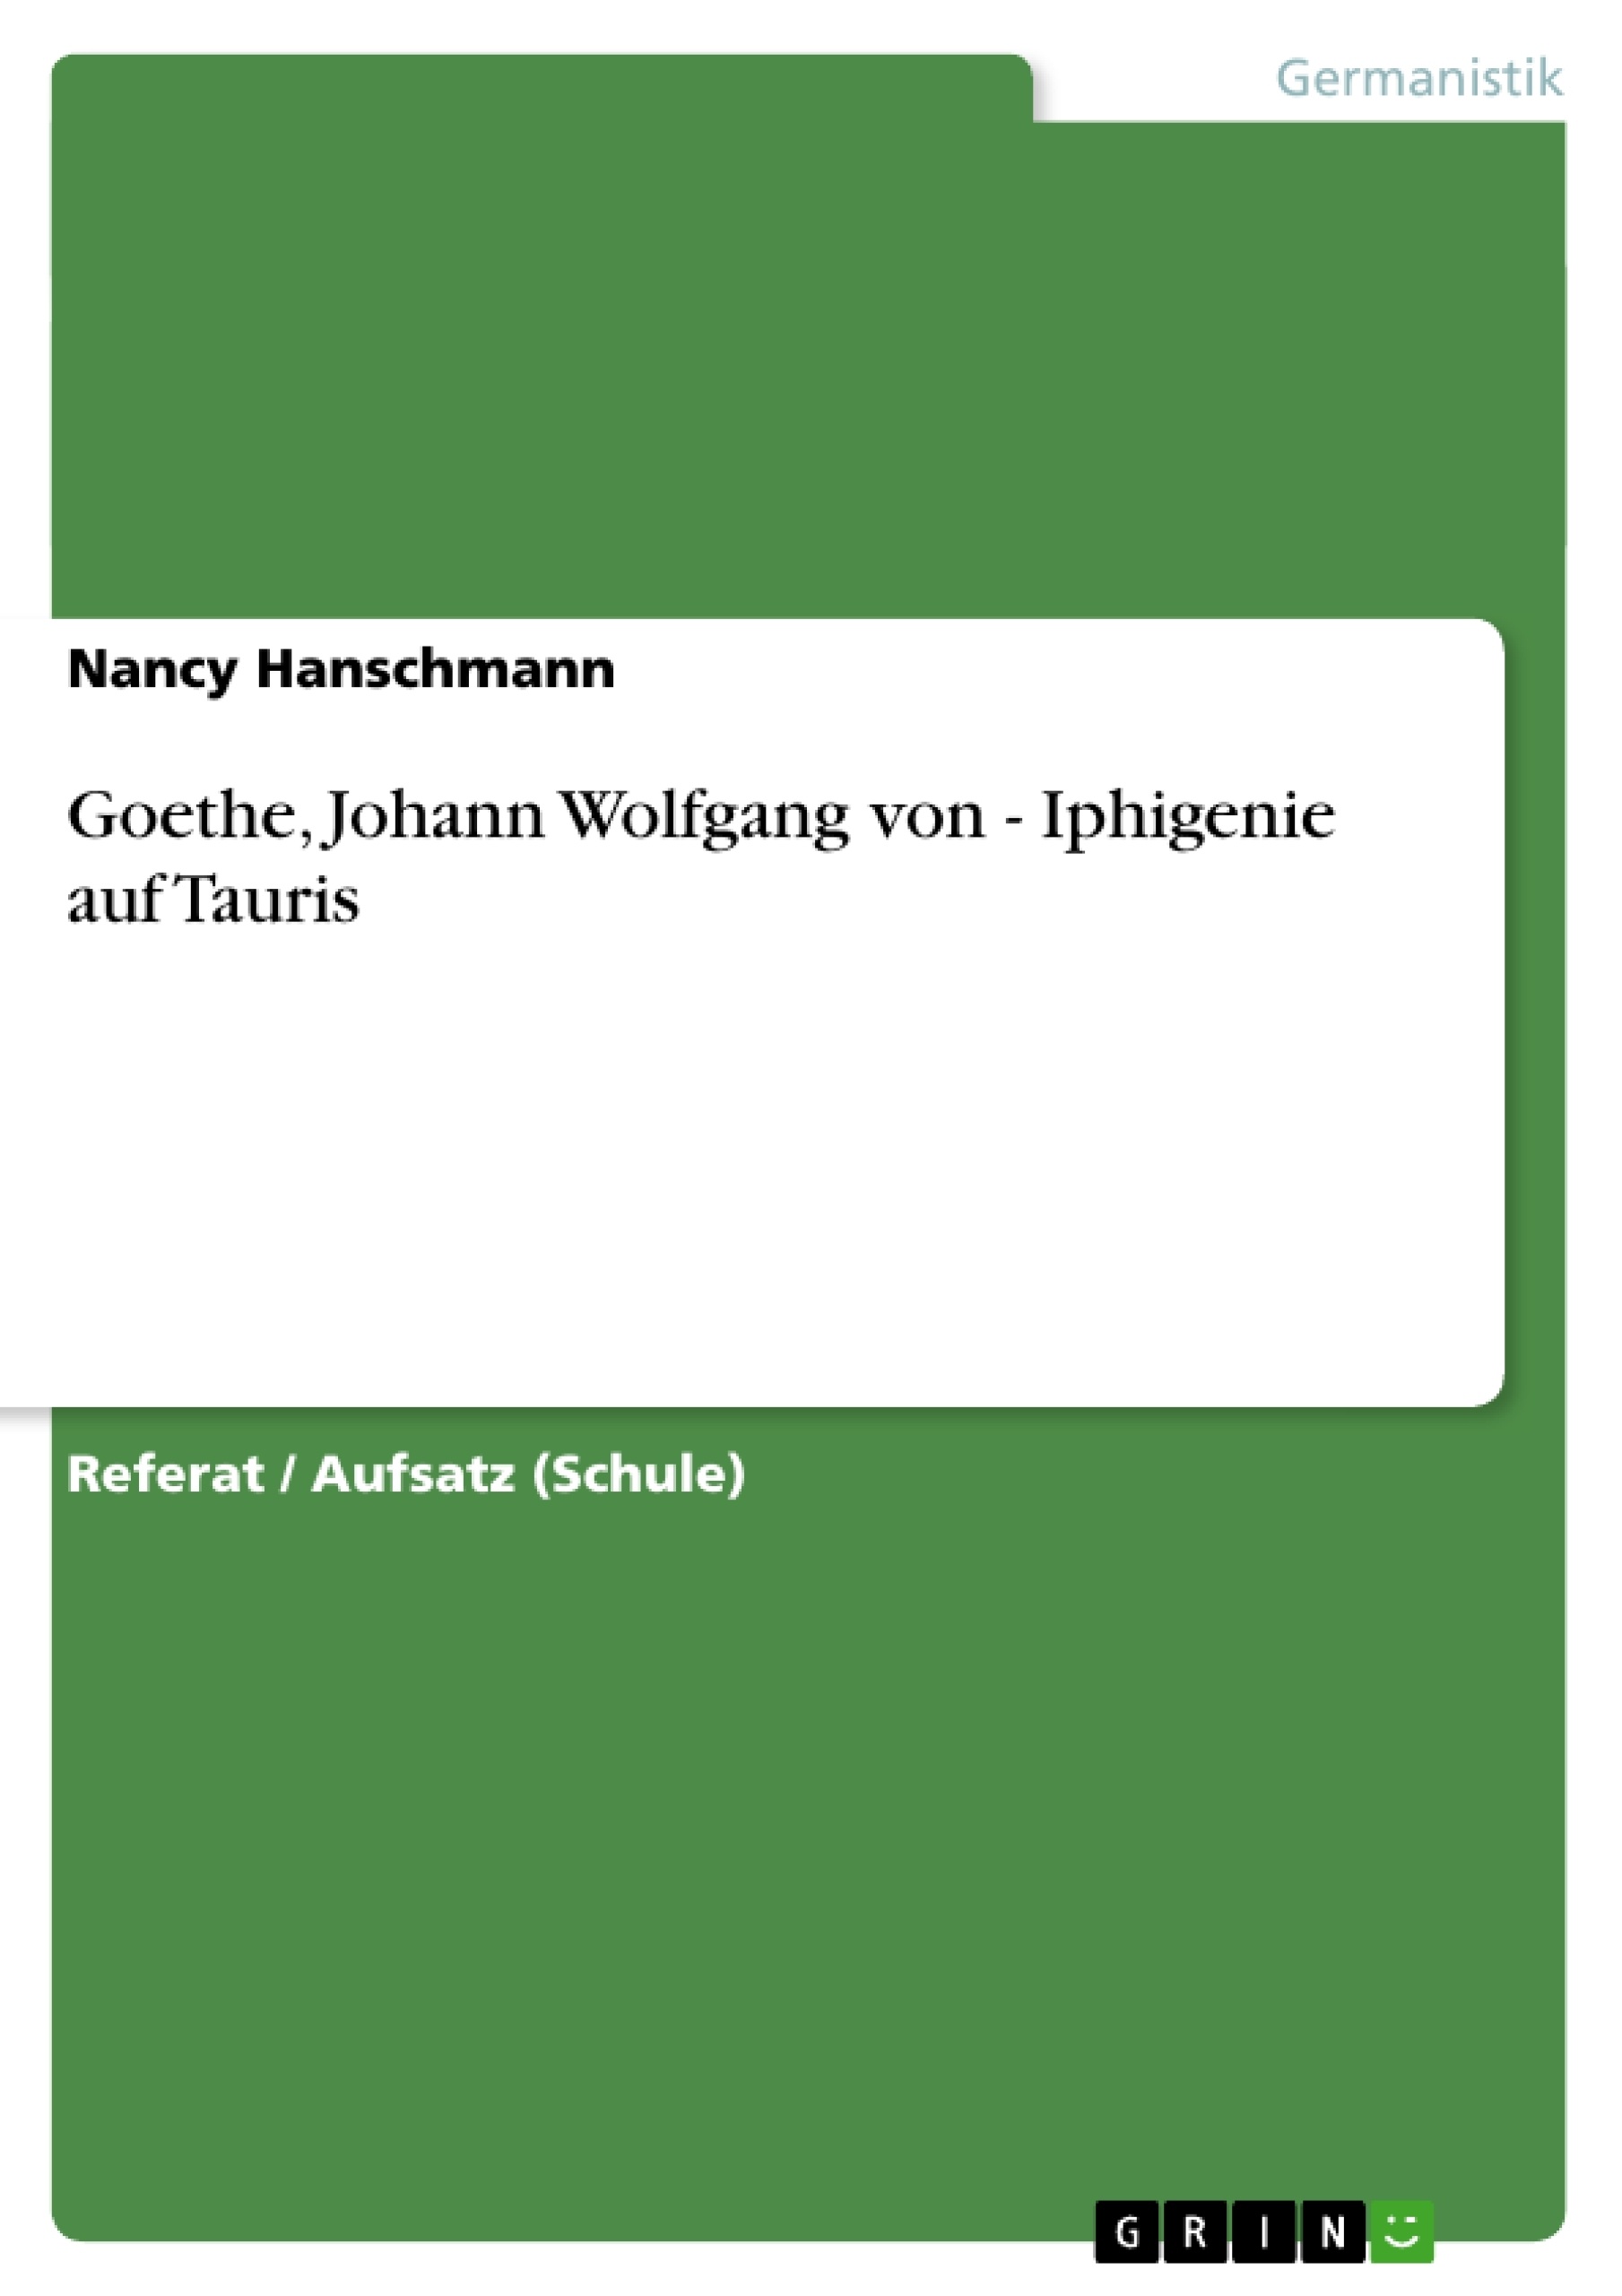 Title: Goethe, Johann Wolfgang von - Iphigenie auf Tauris